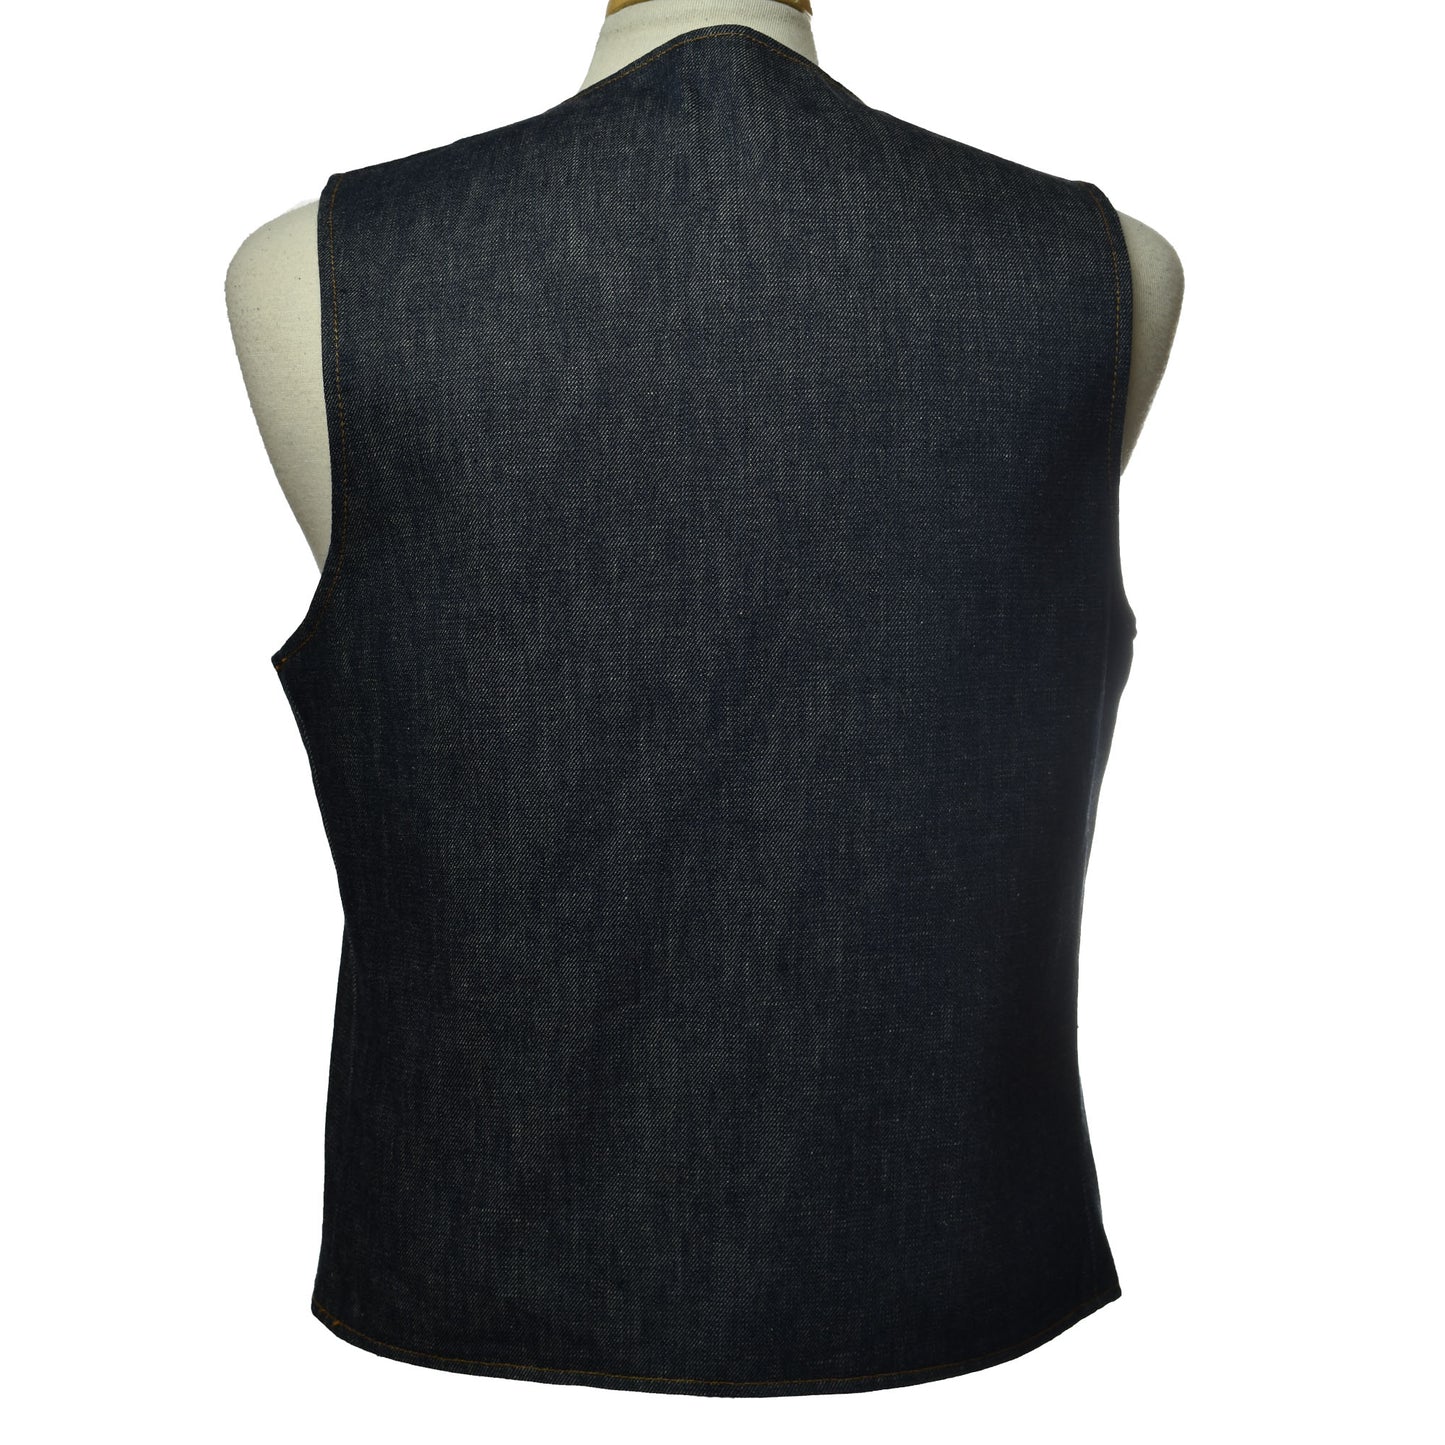 Vintage 1960s Big E Levi's Reversible Denim / Striped Vest with Leather Tie